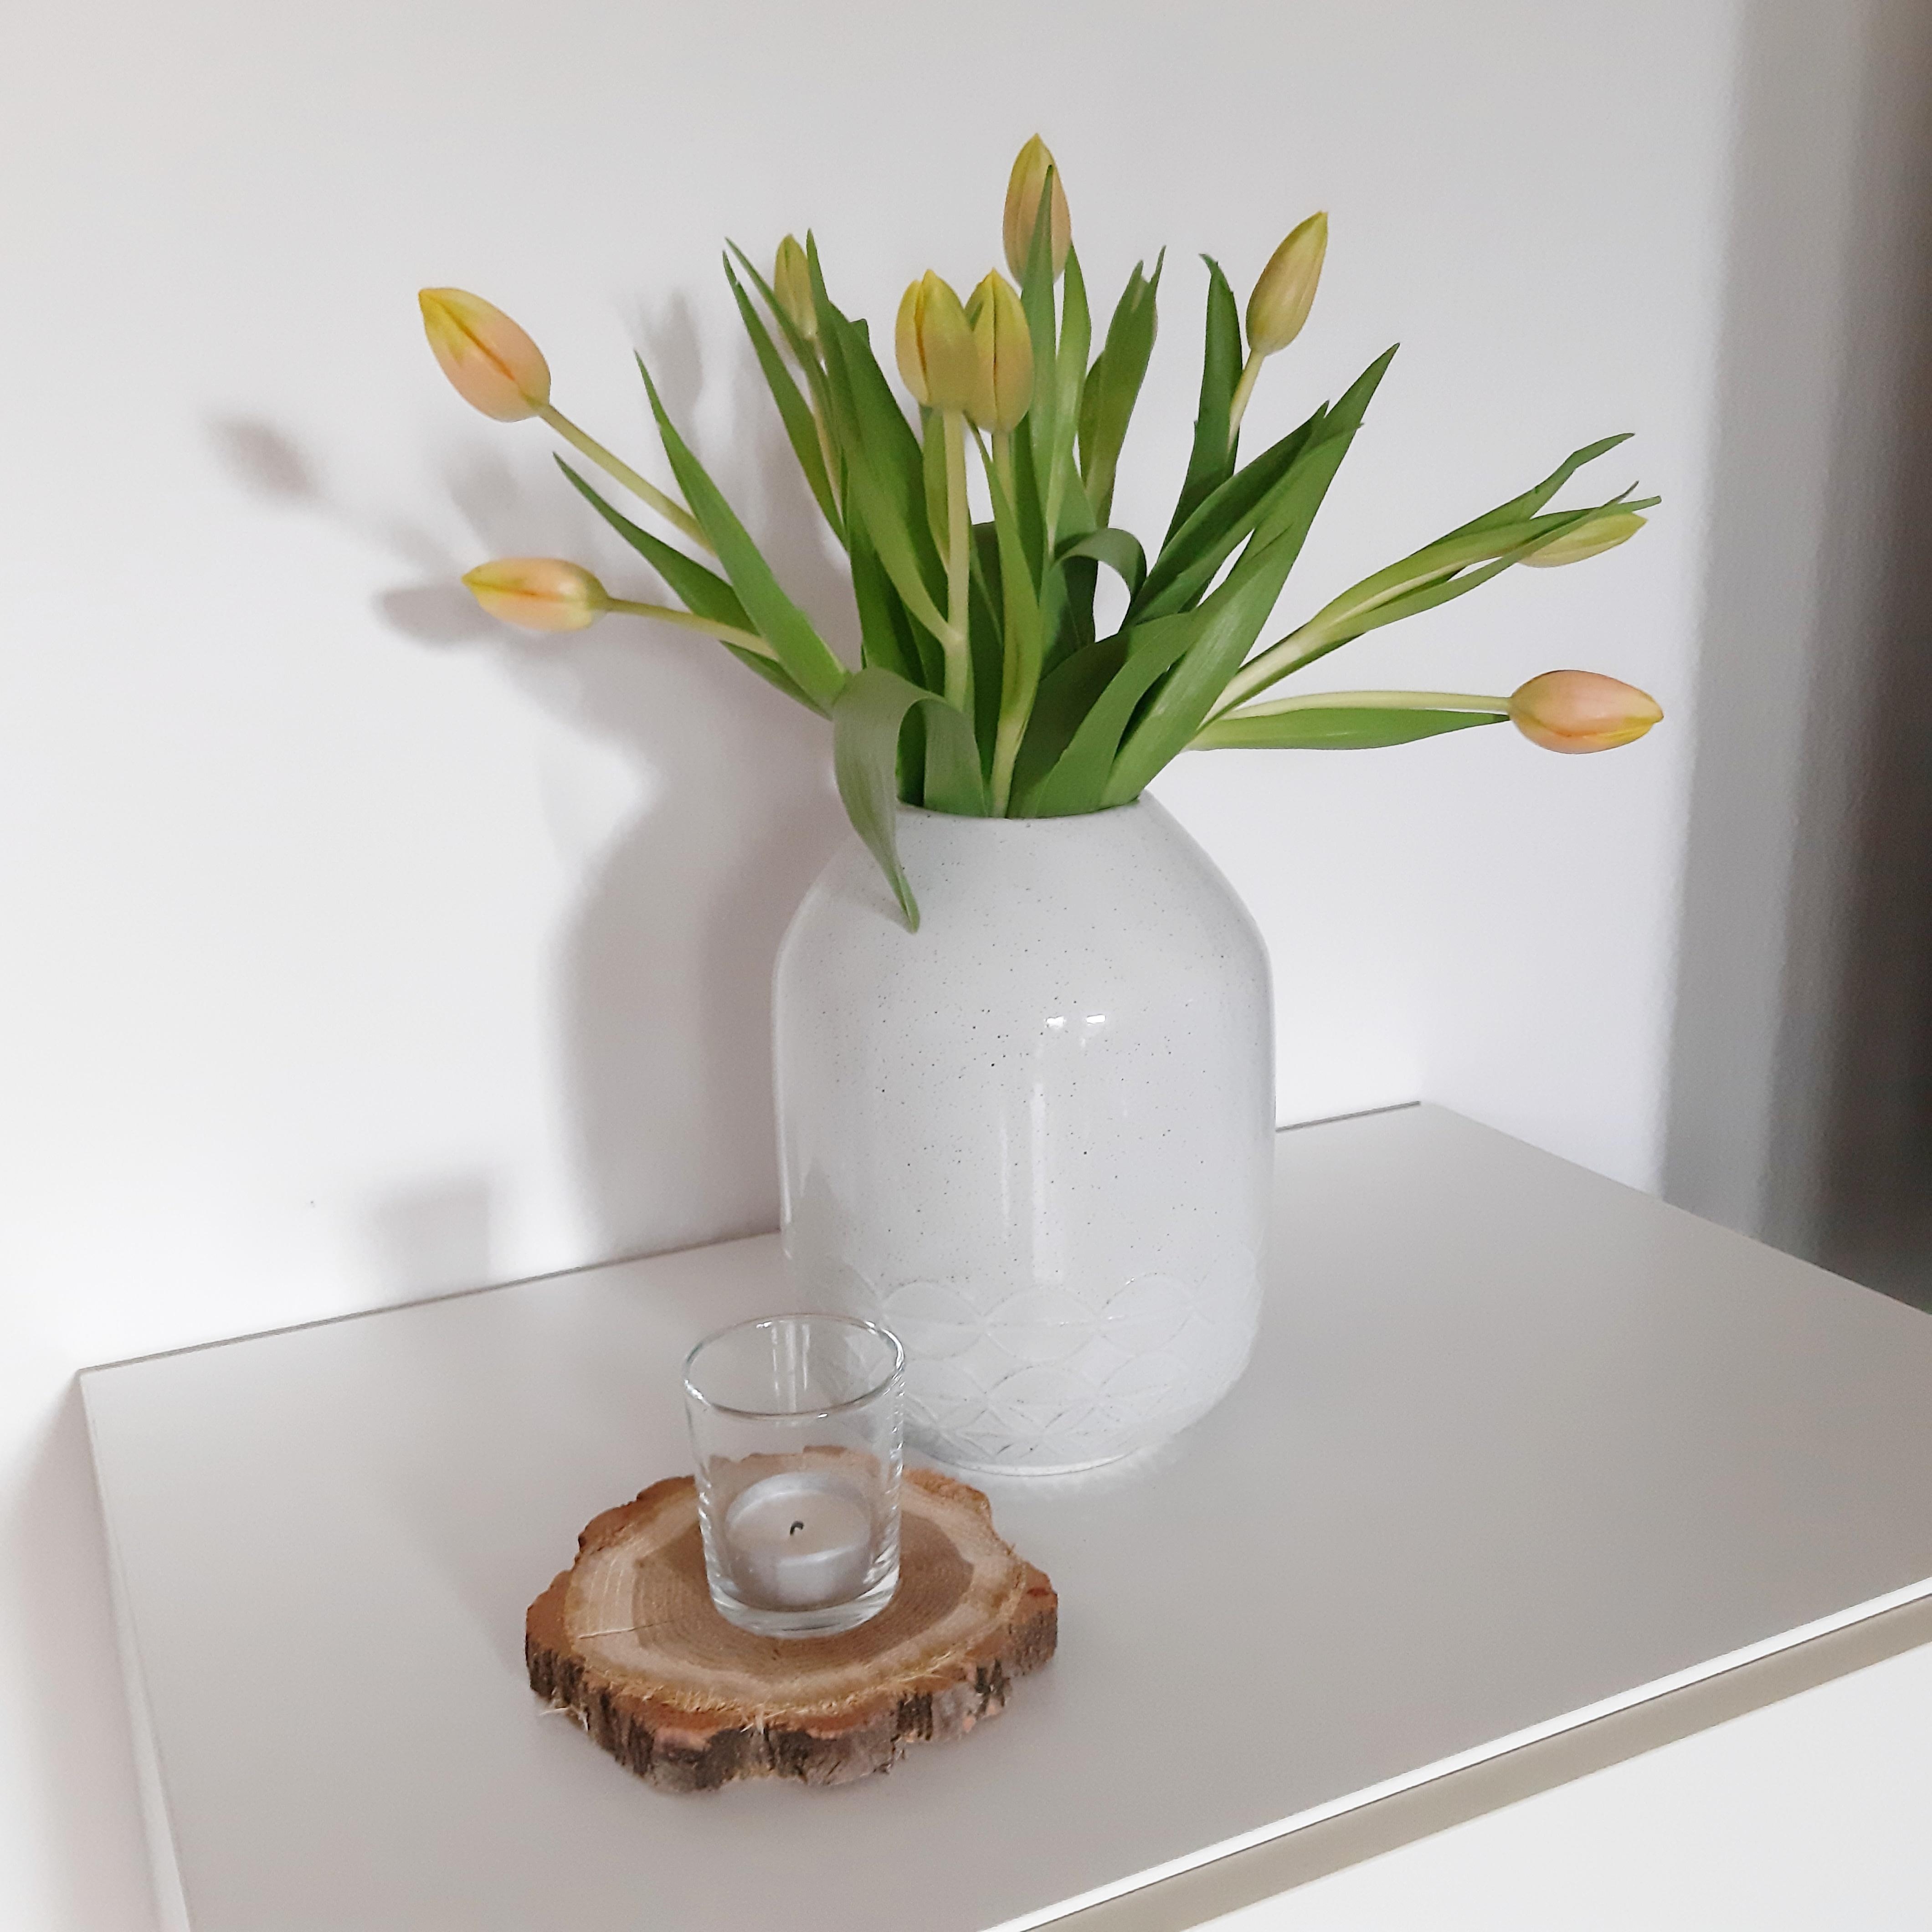 Einen schönen Sonntag an alle! #tulpenliebe #sonntag #couchstyle